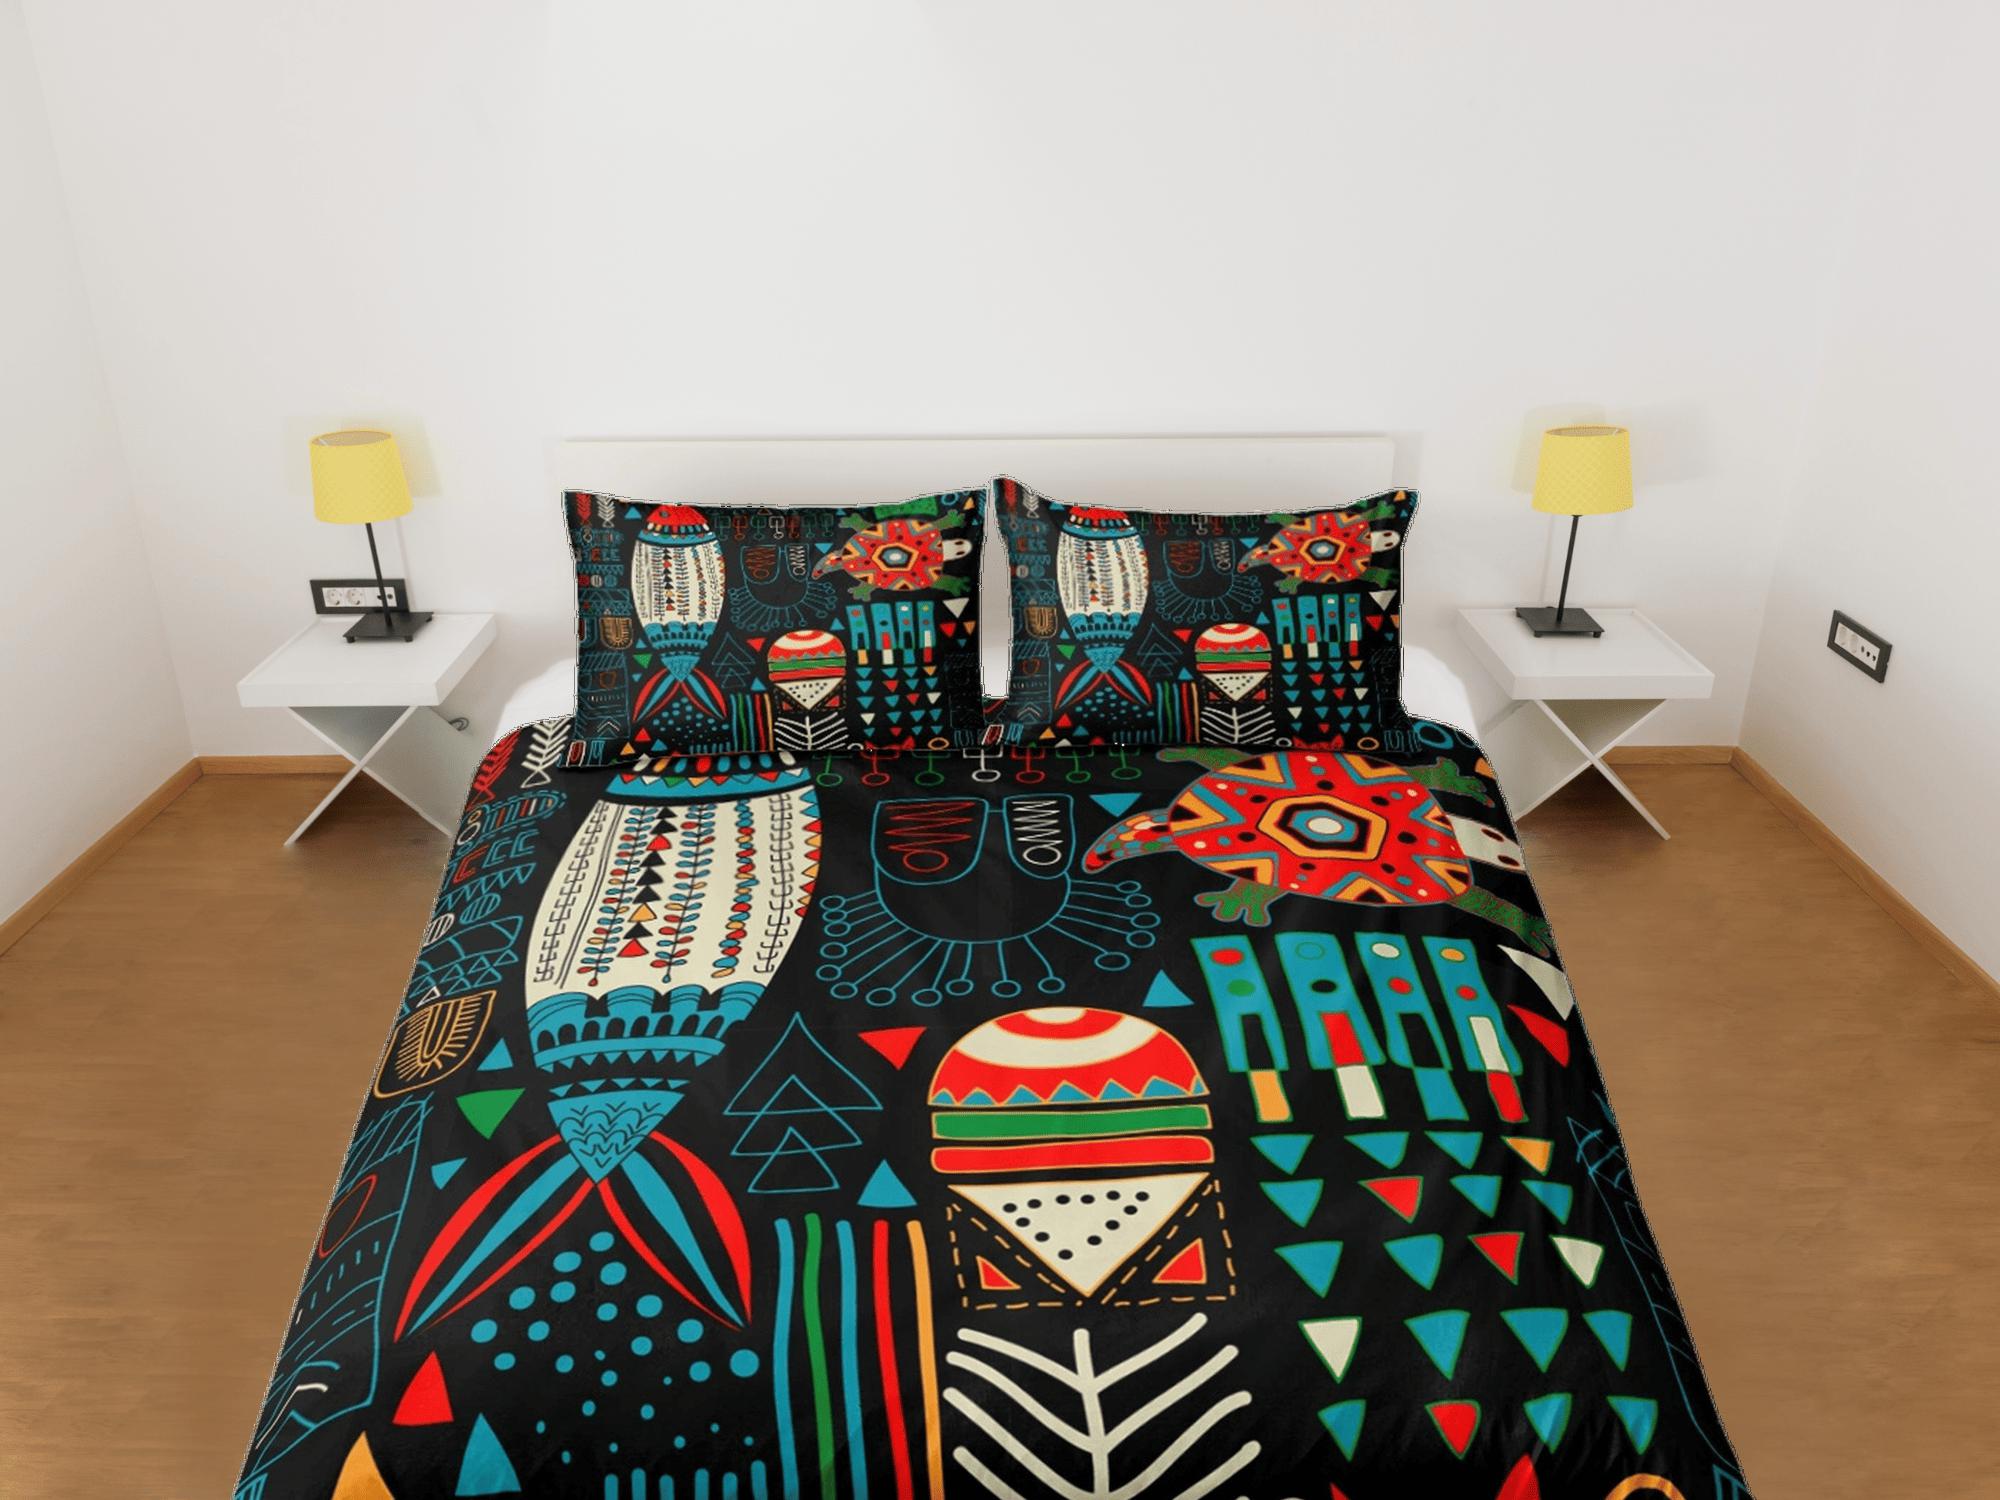 daintyduvet African folk arts colorful bedding set duvet cover, boho bedding, ethnic tribal designs, afrocentric designer bedding, south african gift